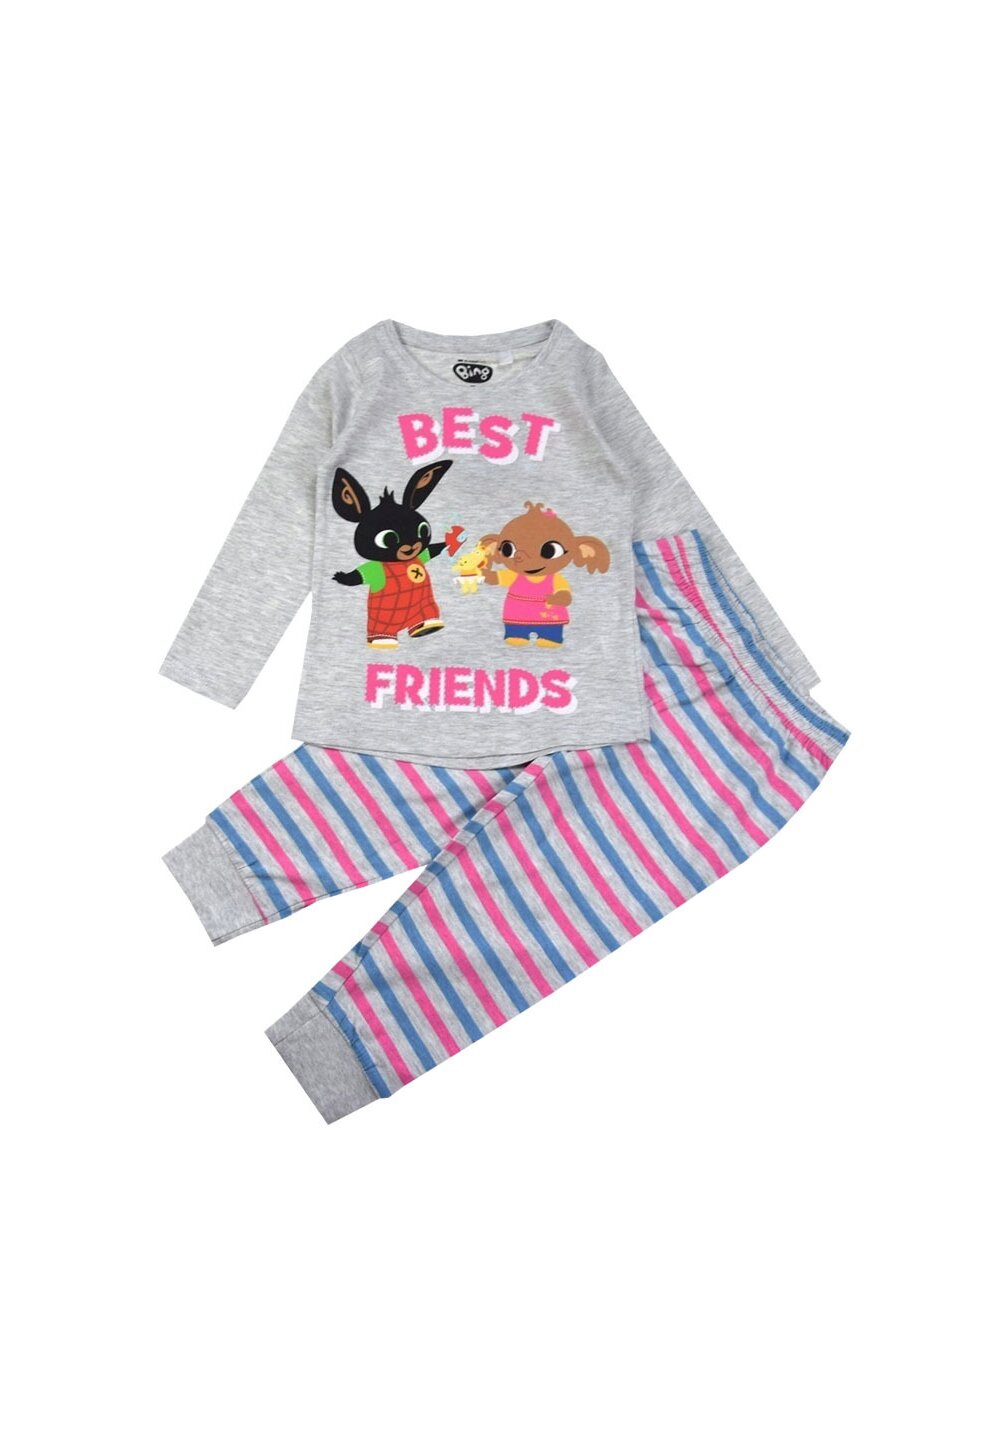 Pijama ML, bumbac, cu imprimeu, Best Friends, Bing, gri Best